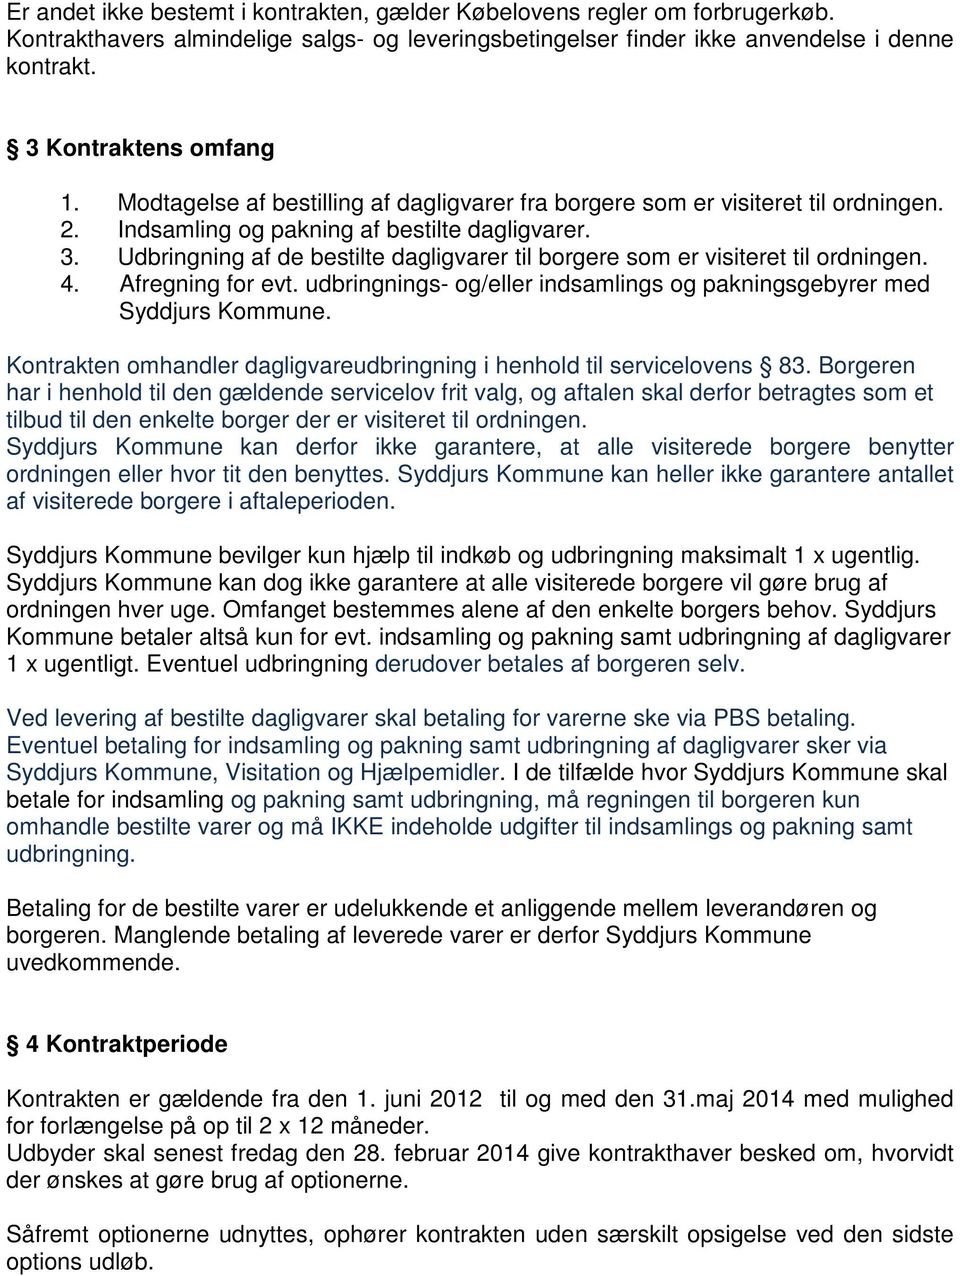 Udbringning af de bestilte dagligvarer til borgere som er visiteret til ordningen. 4. Afregning for evt. udbringnings- og/eller indsamlings og pakningsgebyrer med Syddjurs Kommune.